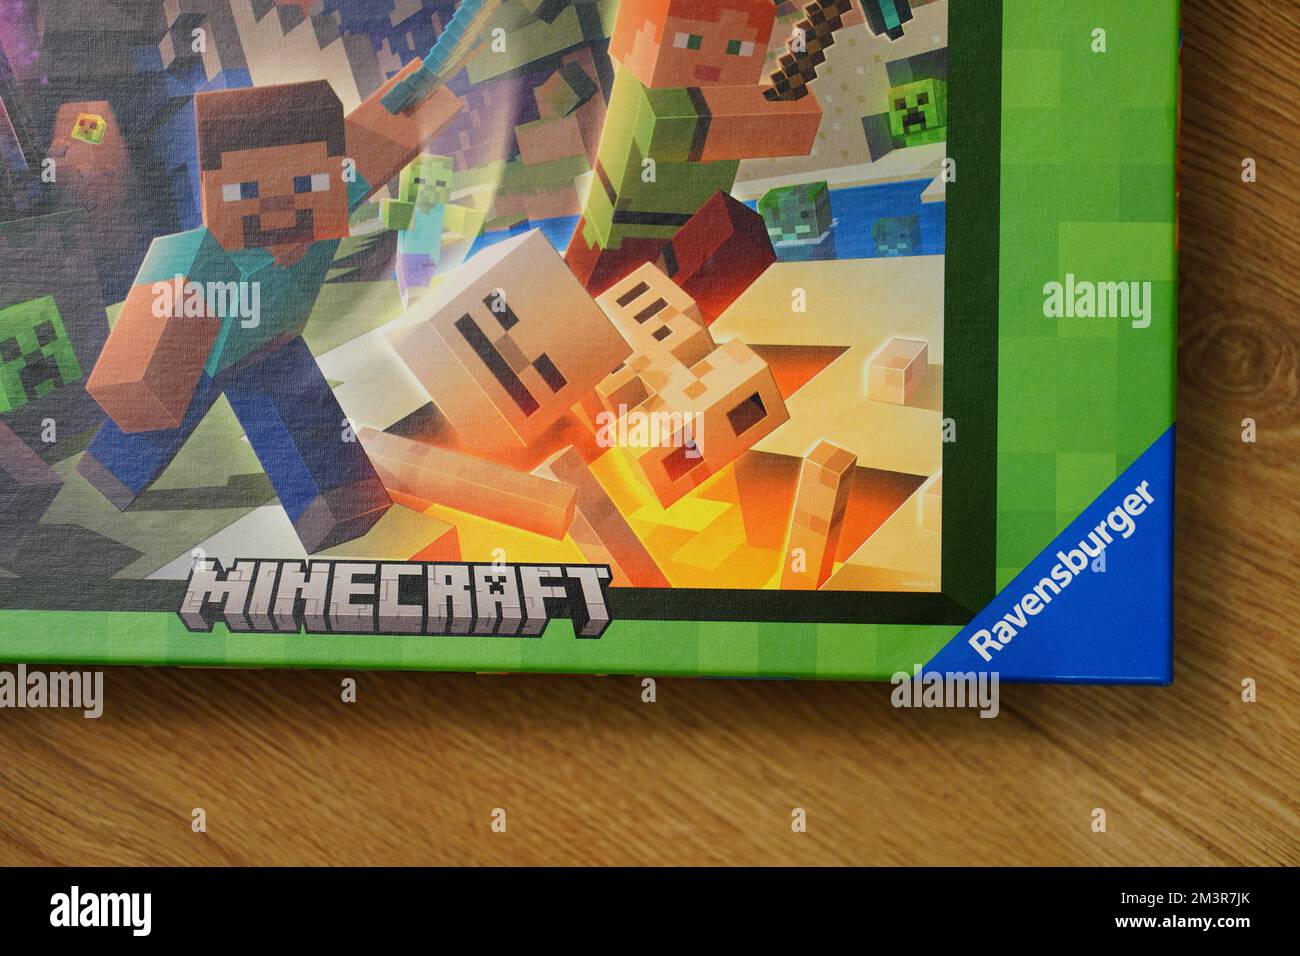 Un primer plano del rompecabezas Minecraft de la marca 'Ravensburger' en una sobre la superficie de madera Fotografía de stock -